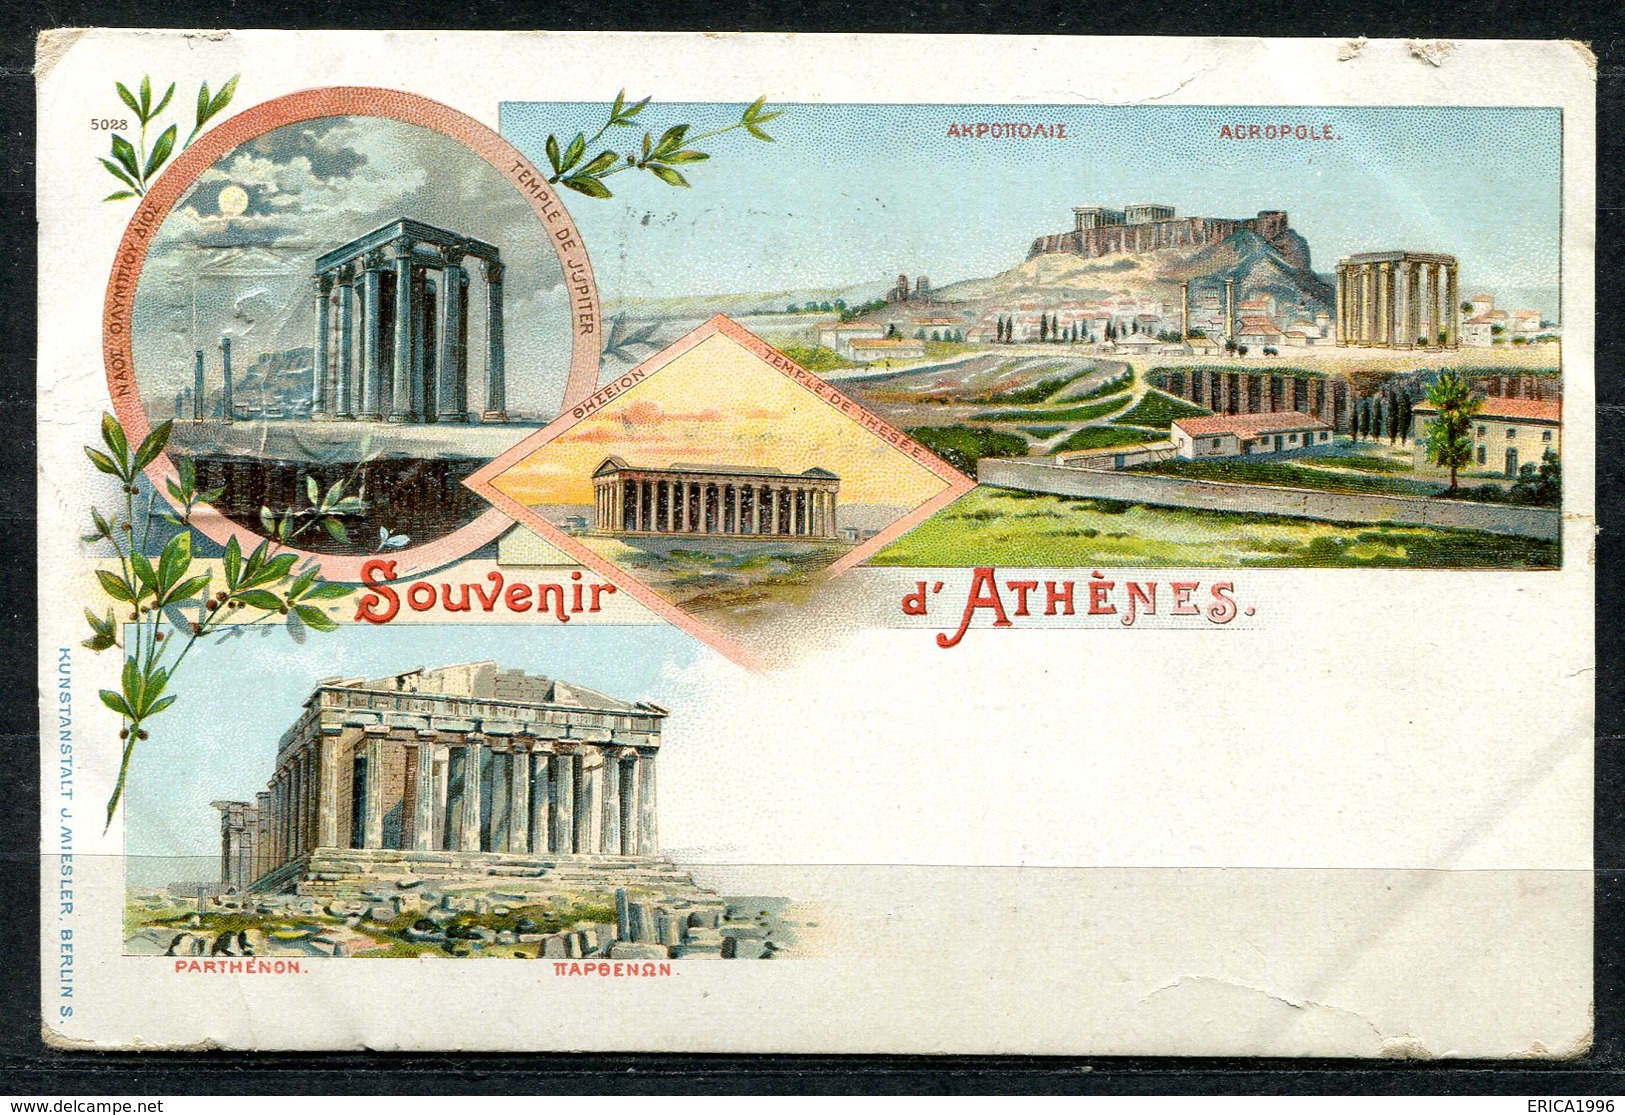 CARTOLINA CV2377 GRECIA GREECE Atene Athens, Gruss Aus Type, 1901, Viaggiata Per L'Italia, Formato Piccolo, Francobollo - Grecia